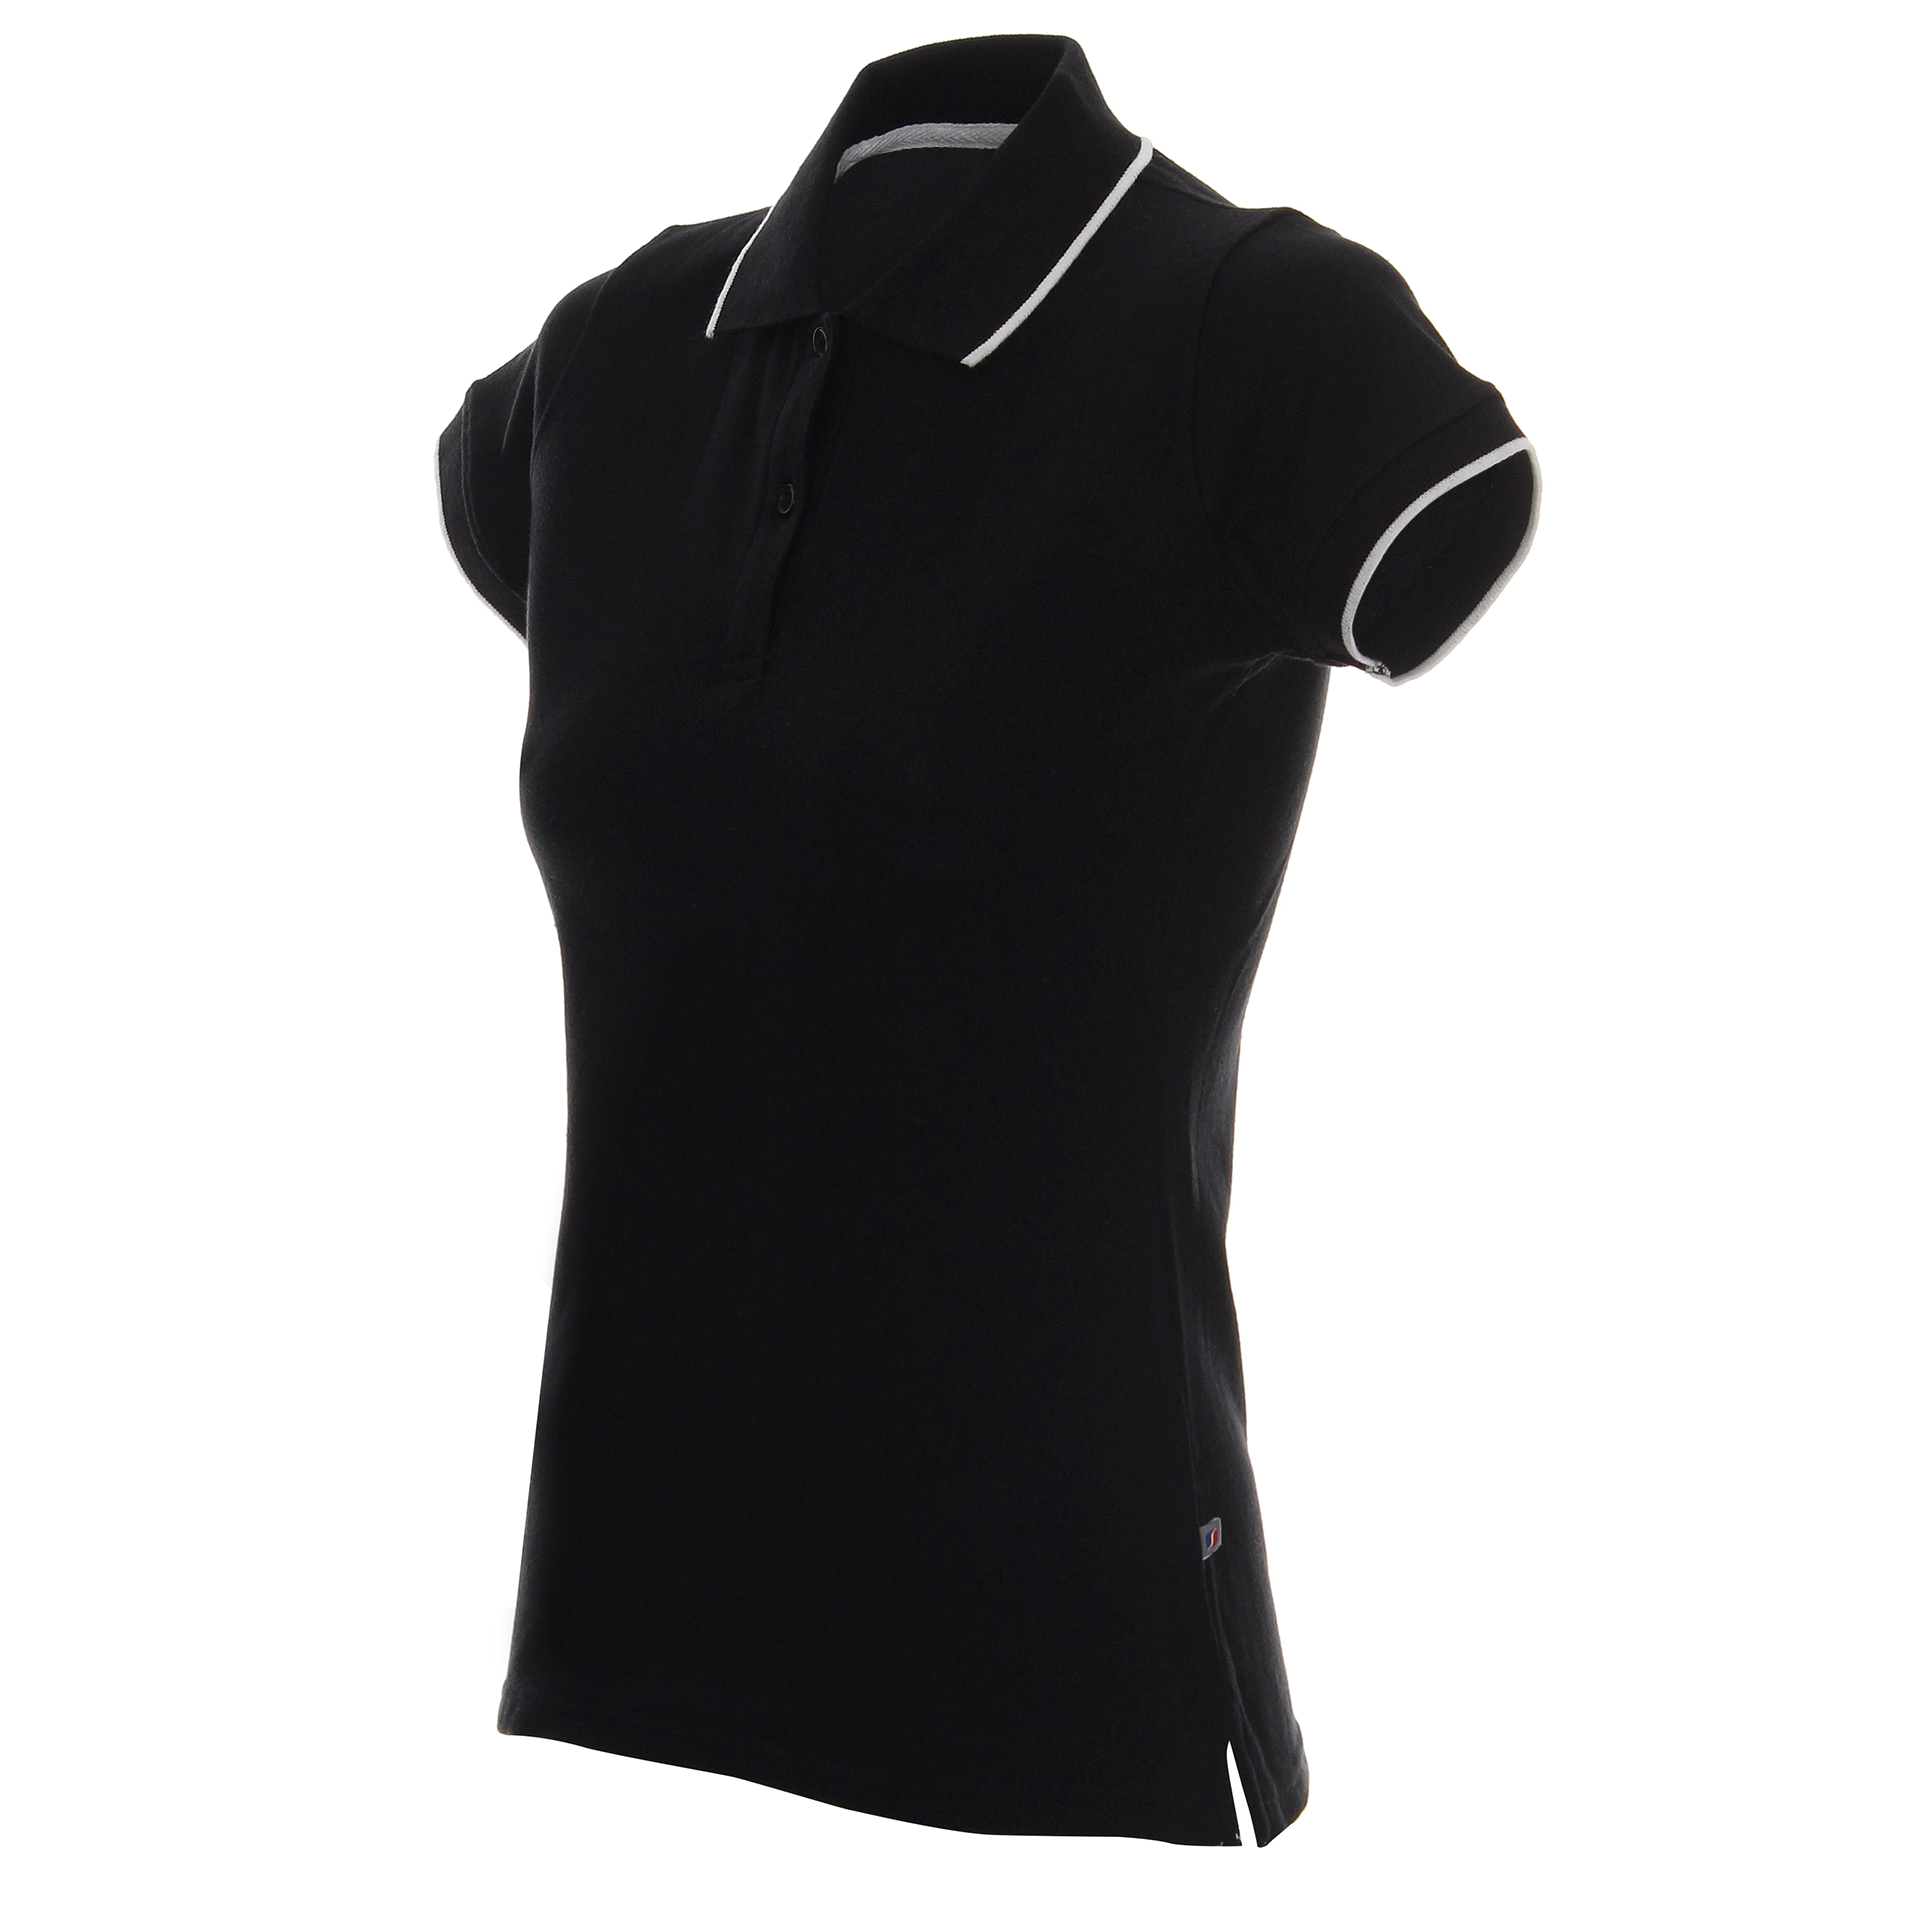 Koszulka Polo Promostars Ladies Line - czarna z białym wykończeniem